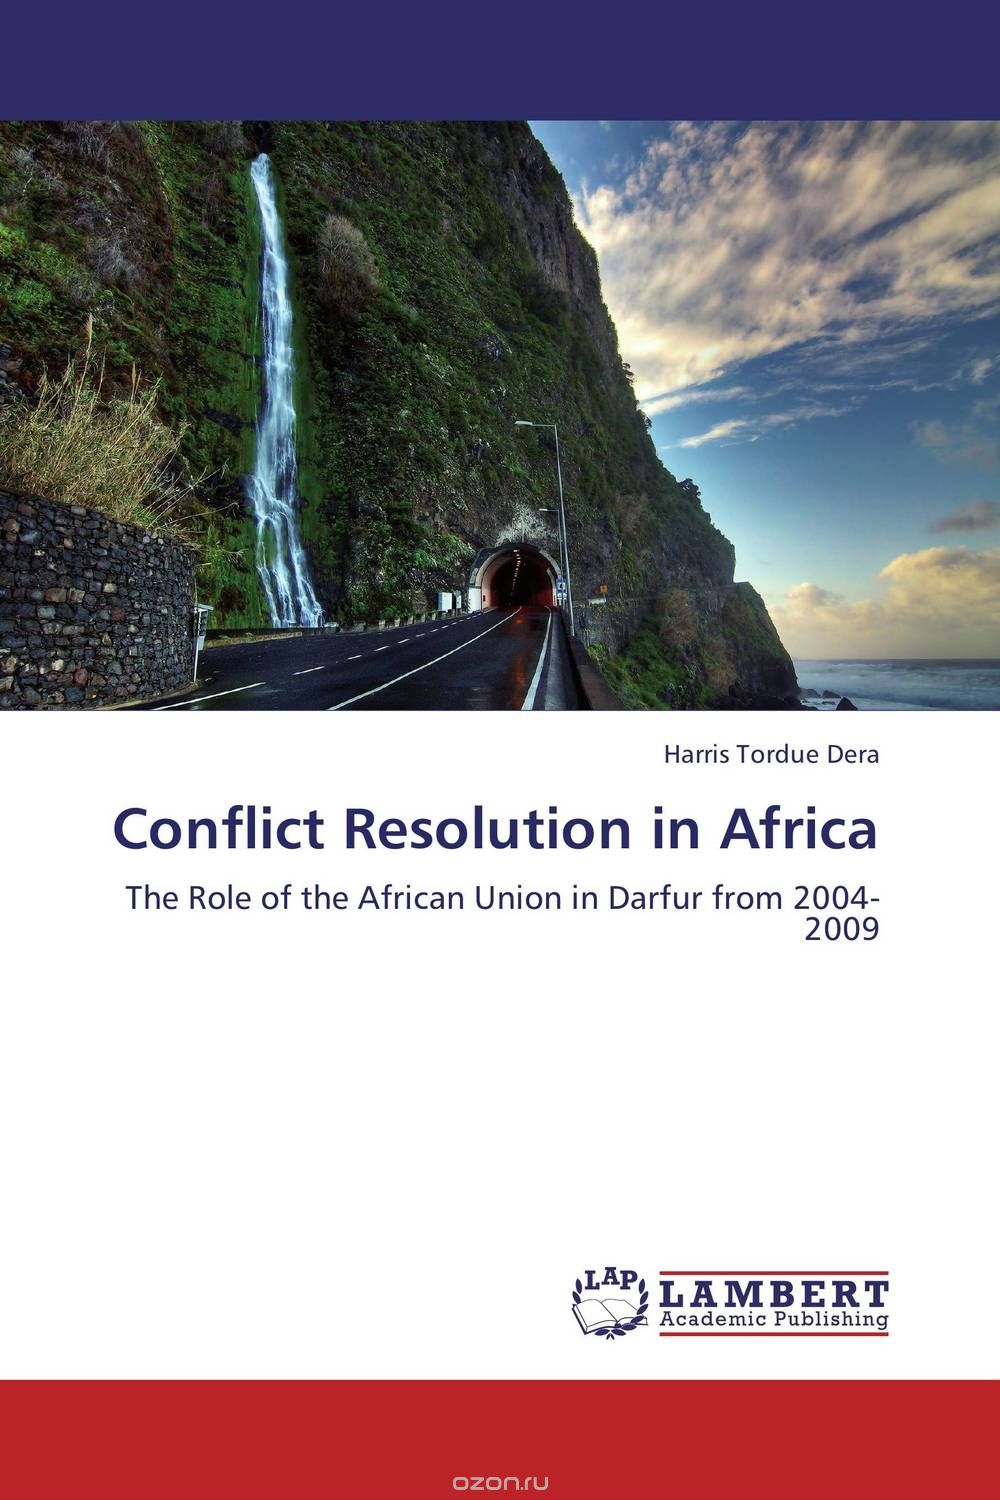 Скачать книгу "Conflict Resolution in Africa"